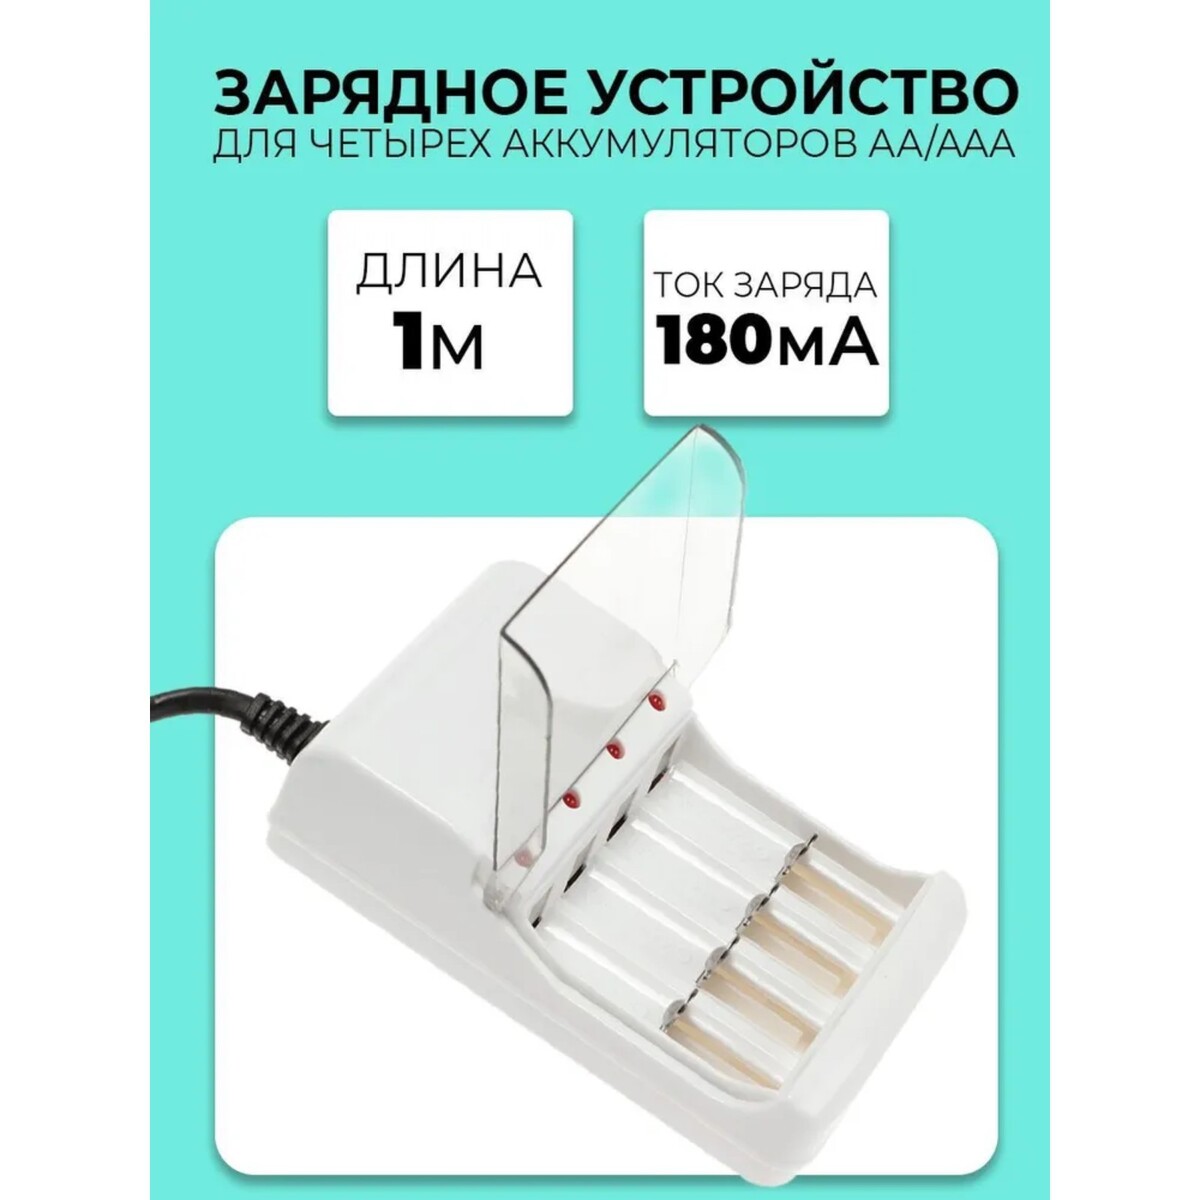 фото Зарядное устройство для четырех аккумуляторов аа или ааа chr-56, 1 м,ток заряда 180 ма,белое no brand